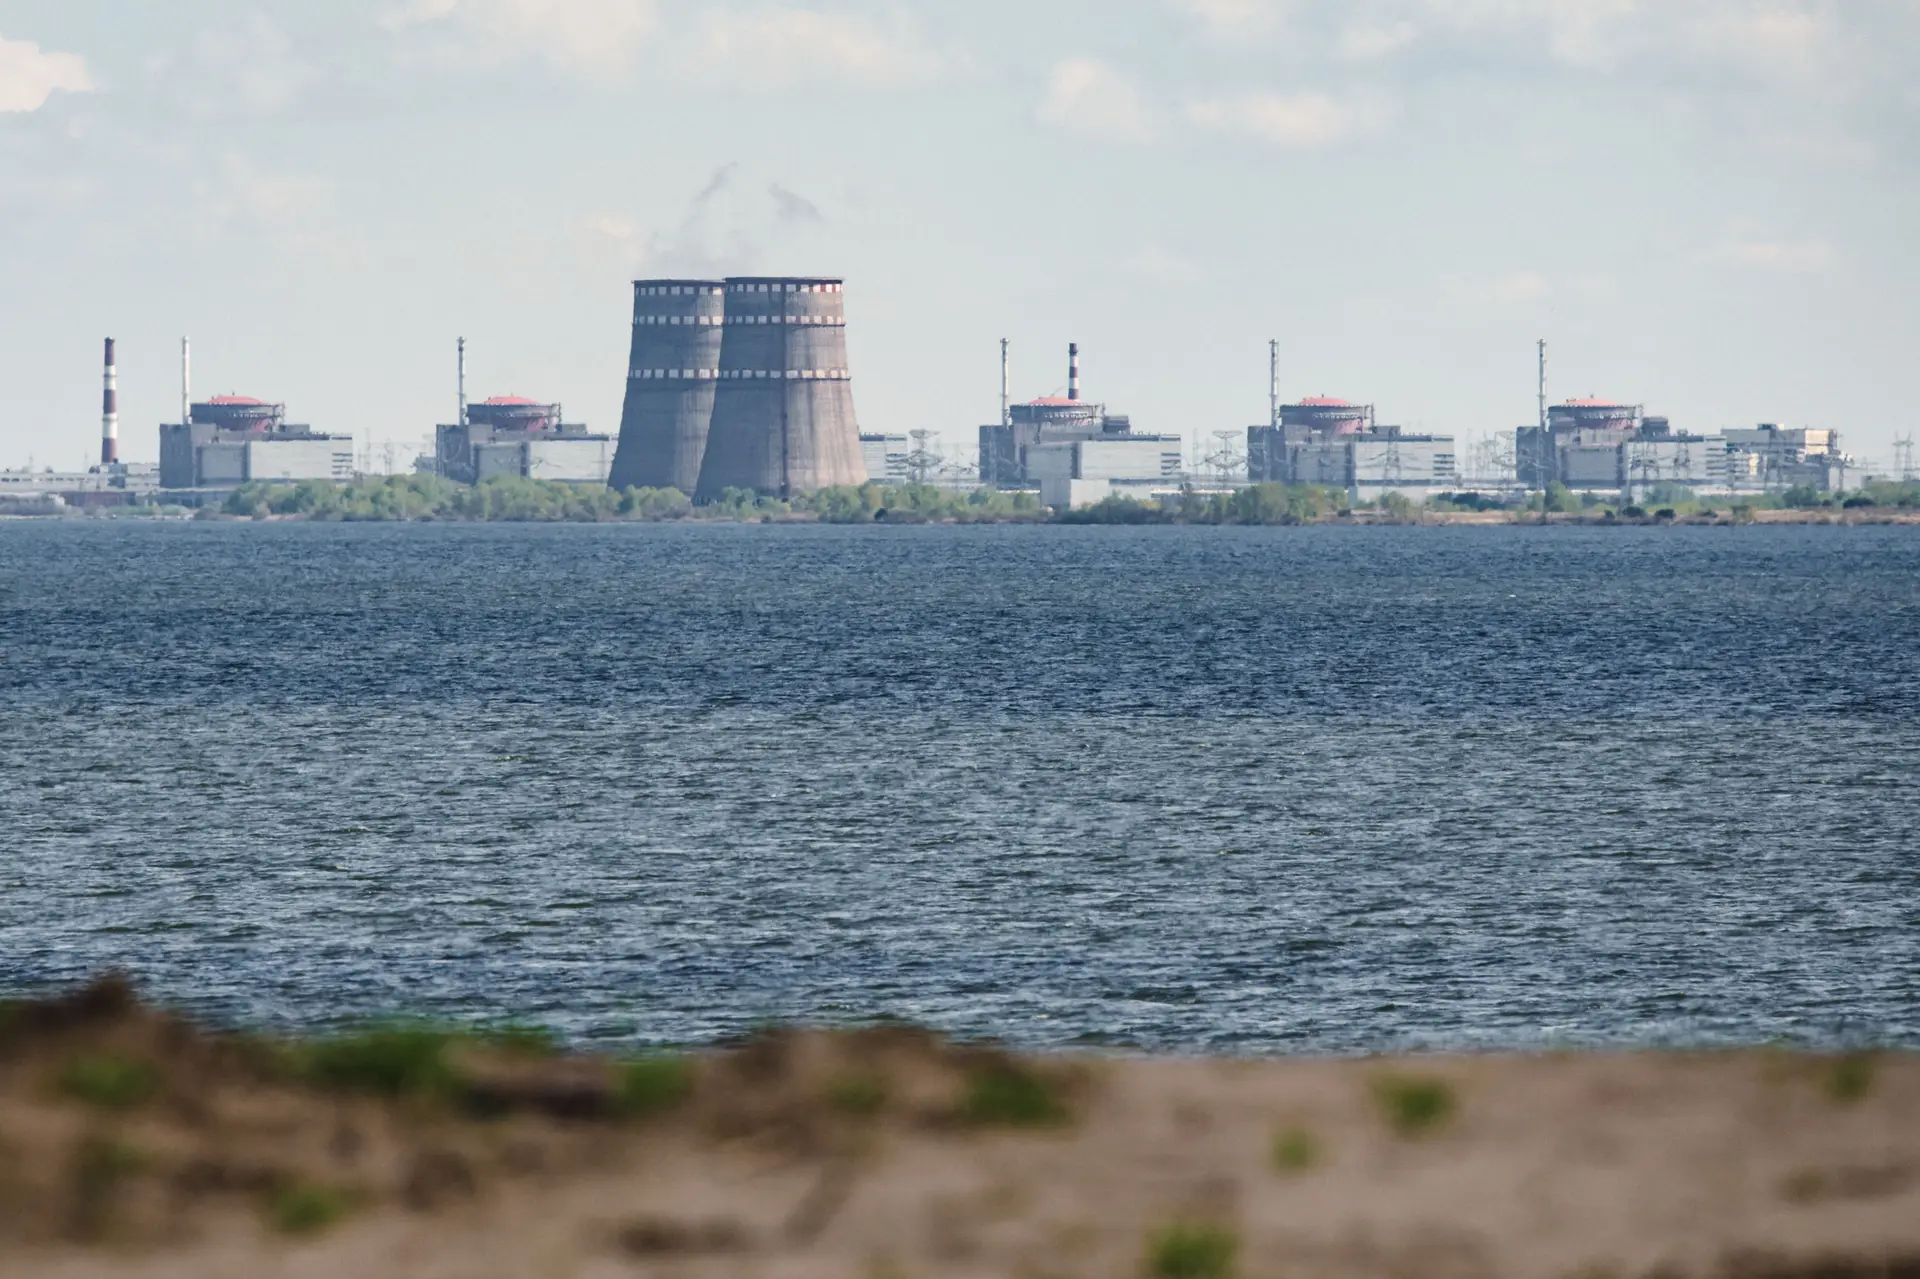 Um acidente em Zaporijia “poderá ser mais grave” que Fukushima, diz China